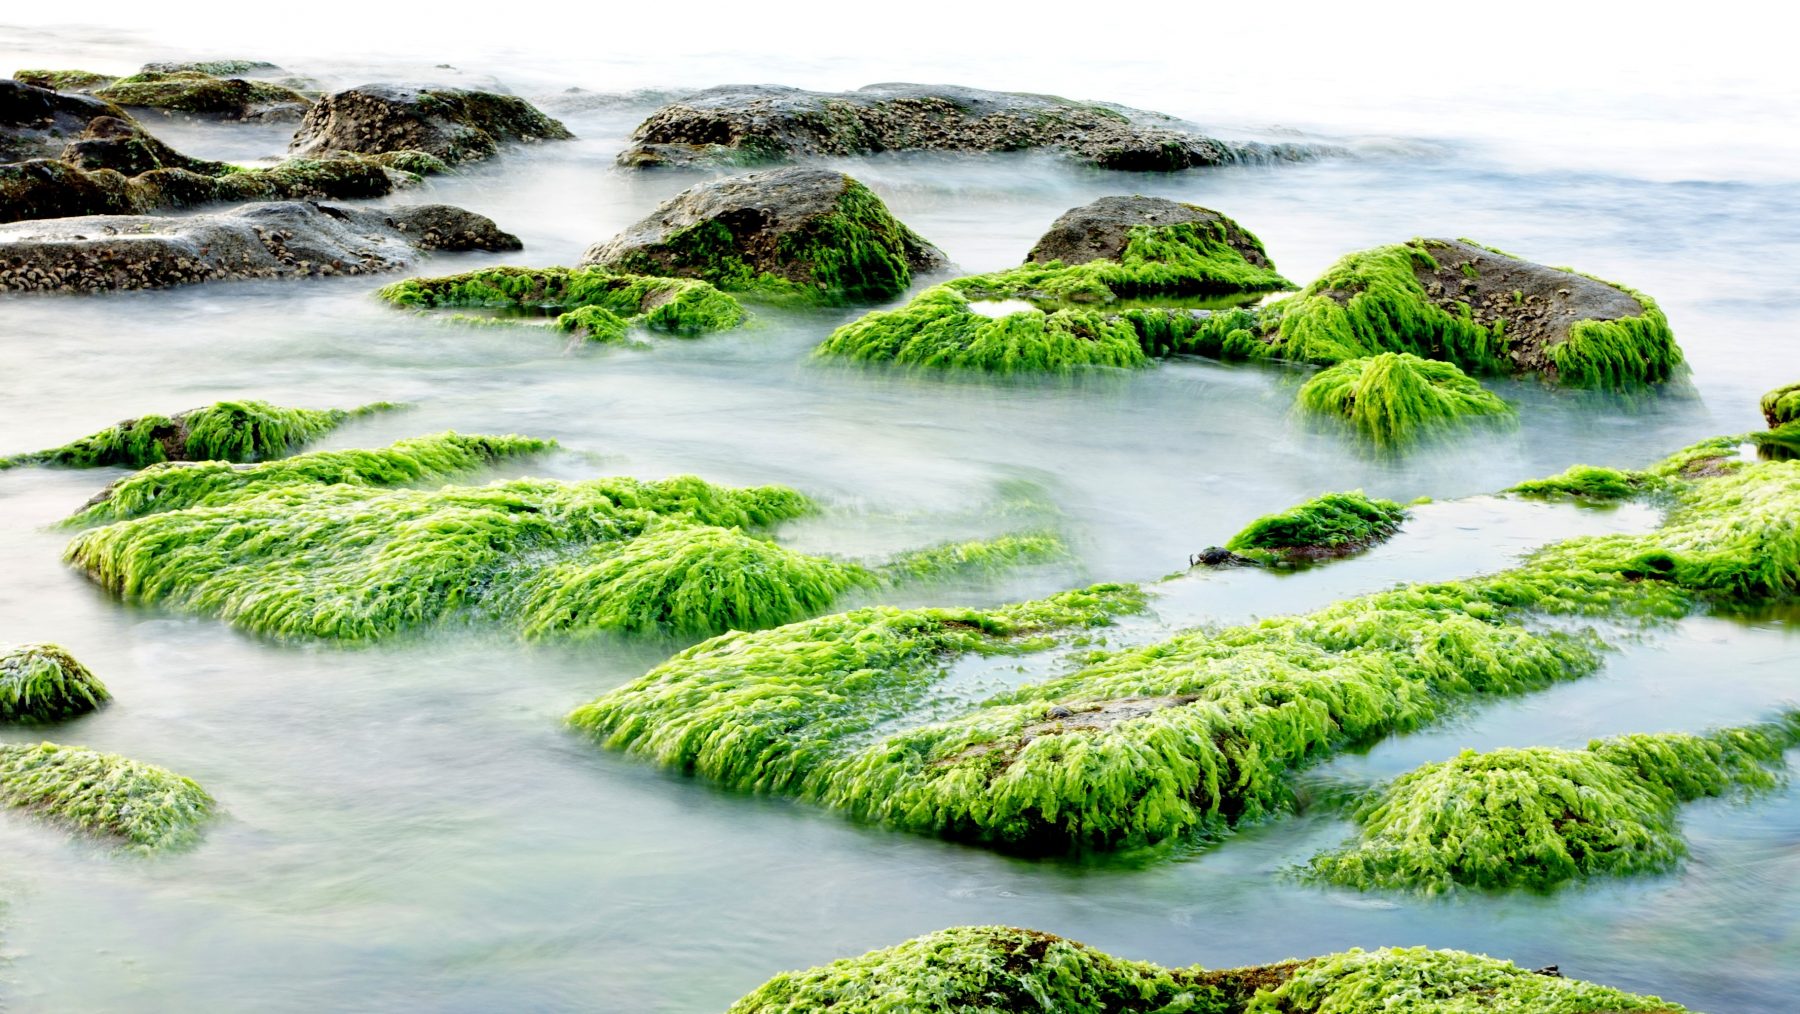 L'histoire des algues – ©Merci Les Algues !